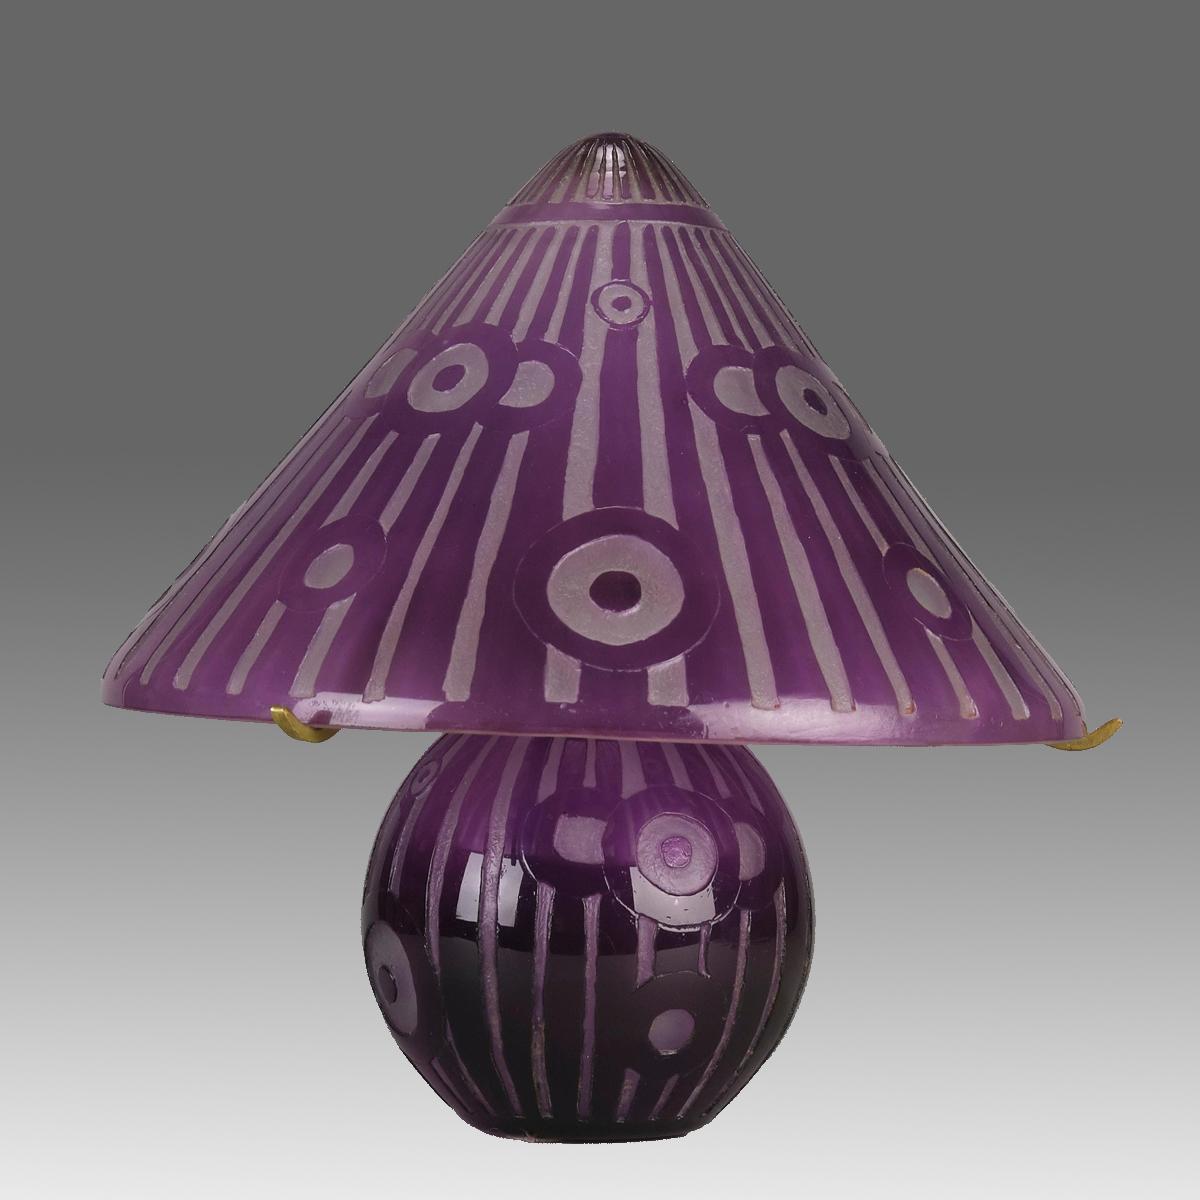 Une lampe en verre camée Art Déco du début du 20e siècle, gravée d'un motif Art Déco saisissant et enveloppée d'une couleur violette profonde, présentant d'excellentes couleurs et détails. Signé Daum Nancy sur le bord de l'abat-jour.
INFORMATIONS